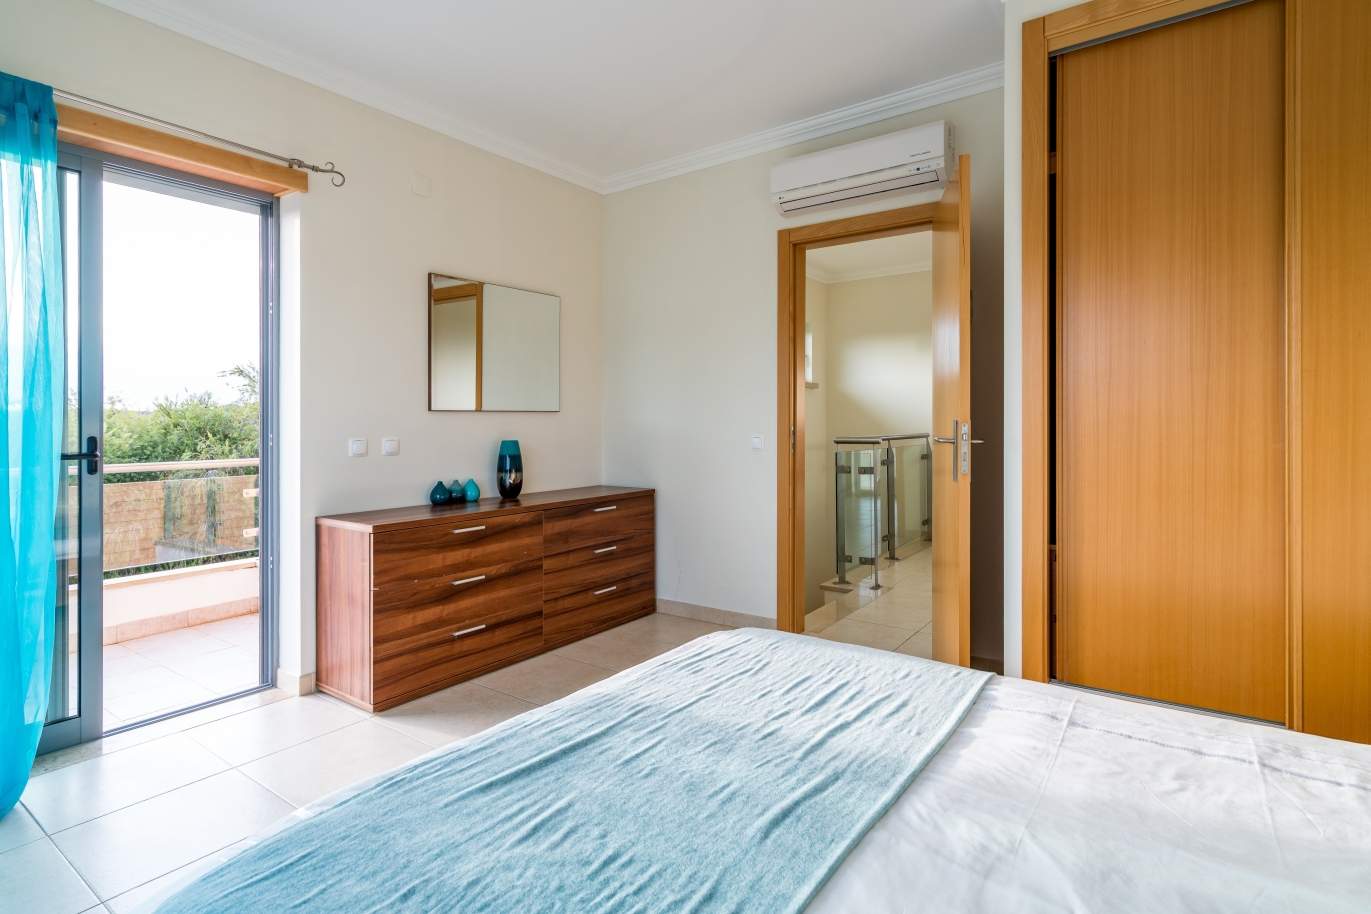 Sale of villa in private condominium in Albufeira, Algarve, Portugal_126898